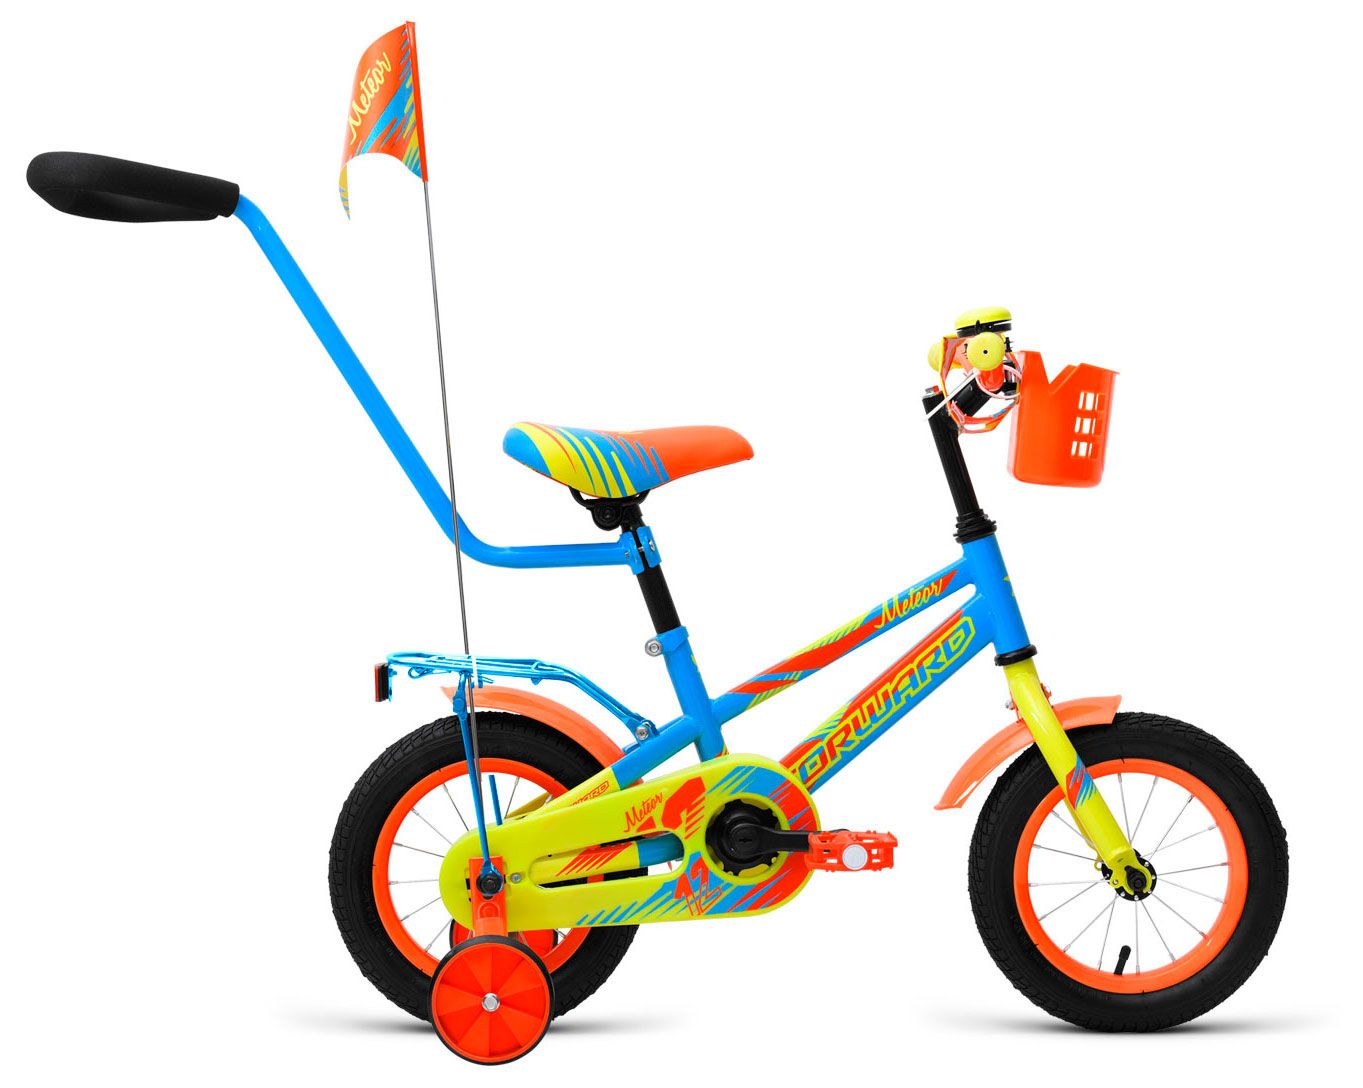  Отзывы о Трехколесный детский велосипед Forward Meteor 12 2018